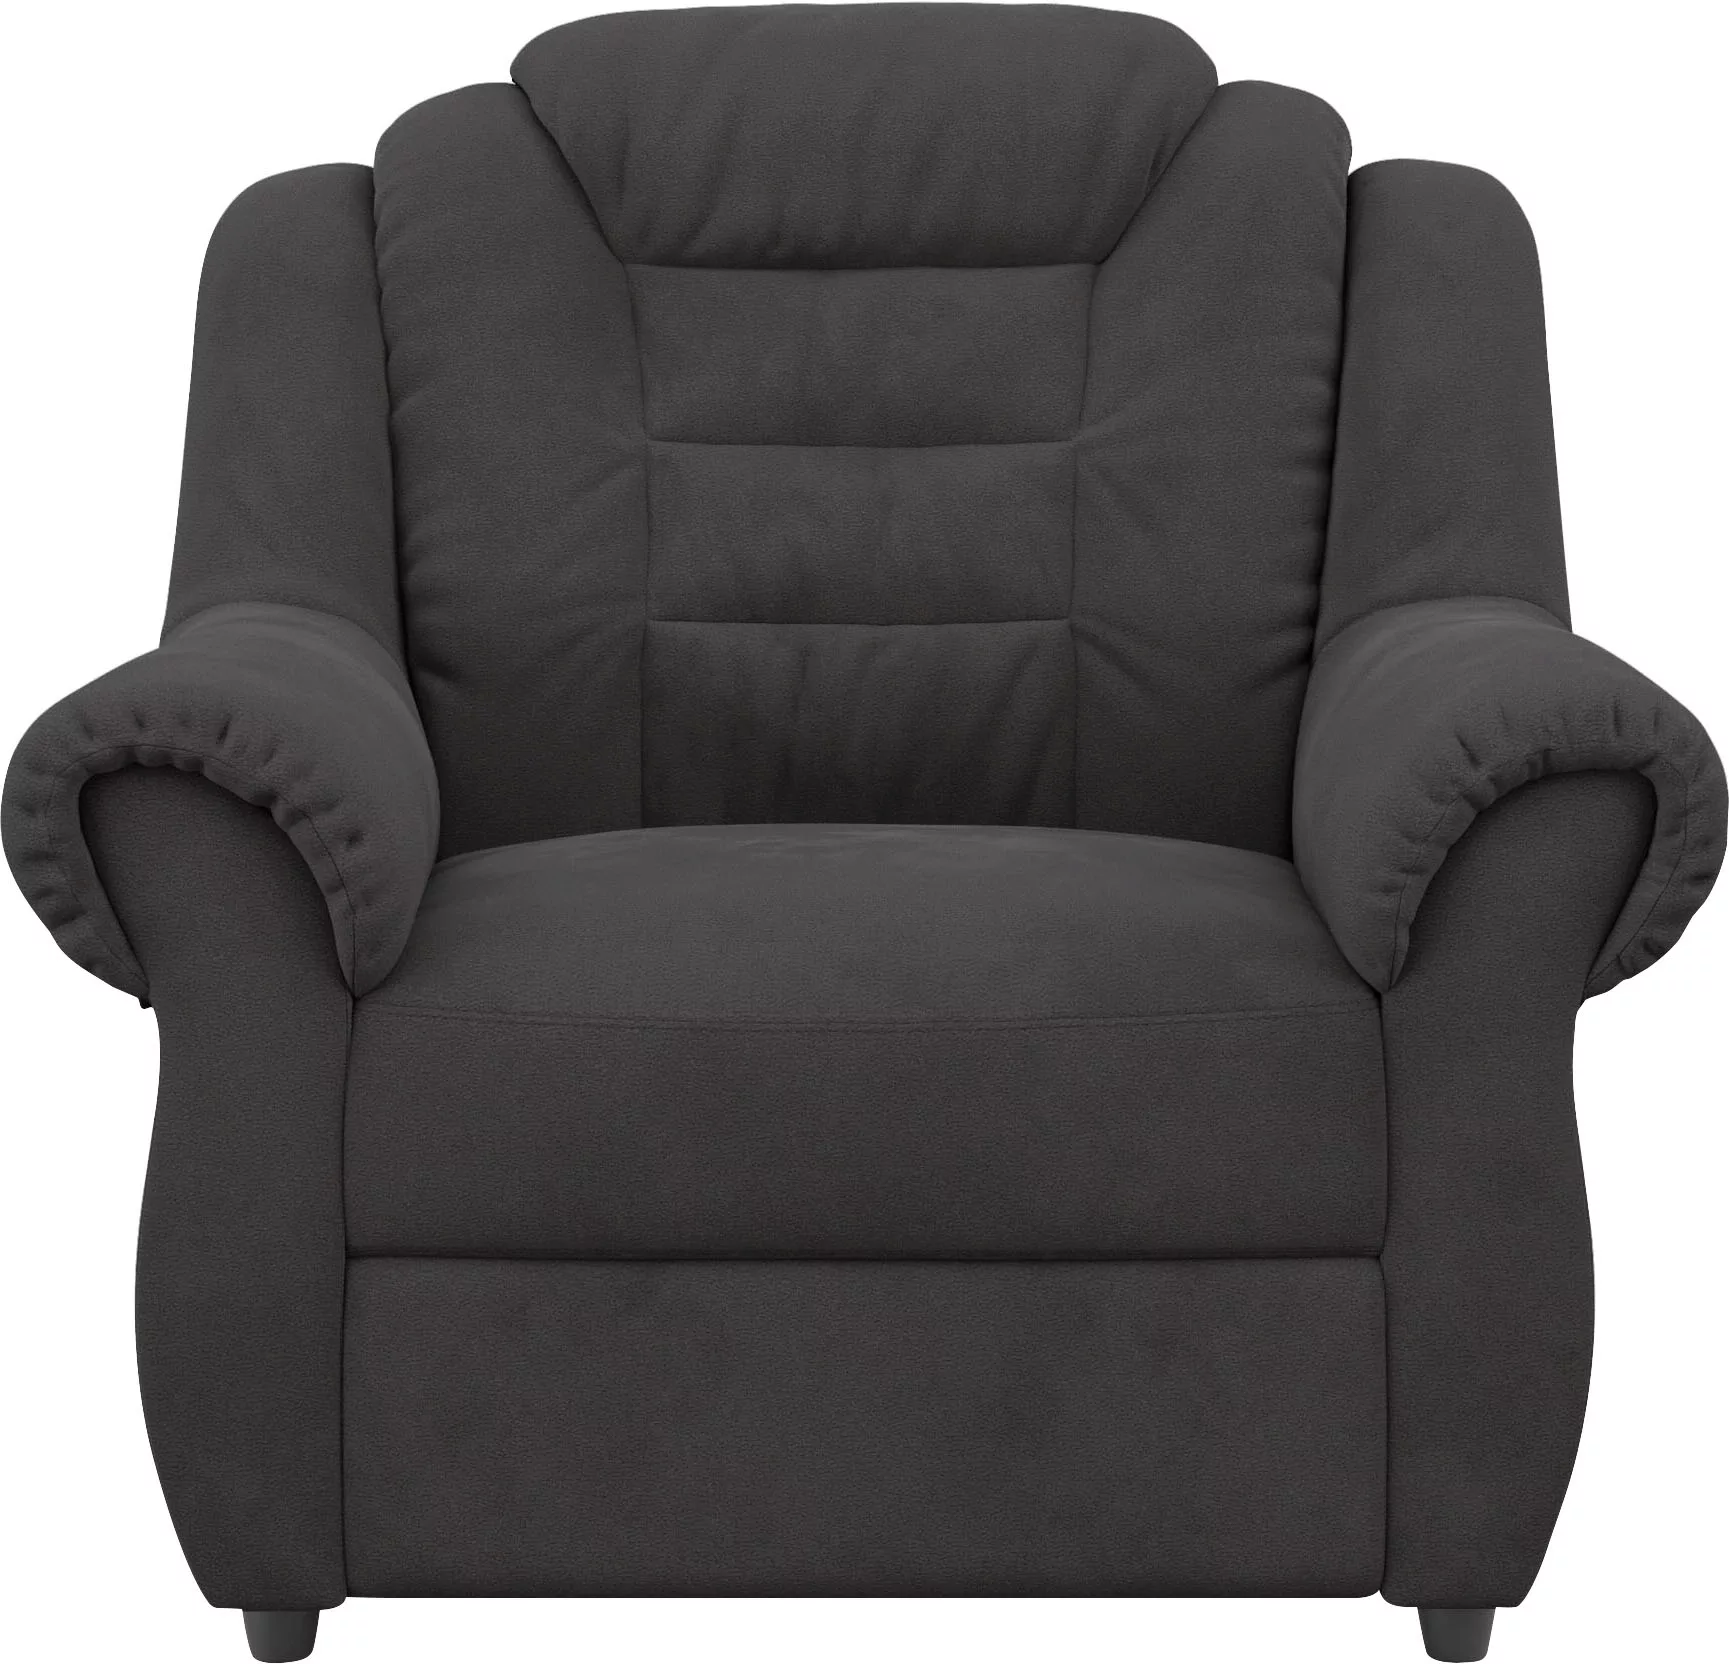 Home affaire Sessel "Boston", Sessel in klassischem Design mit hoher Rücken günstig online kaufen